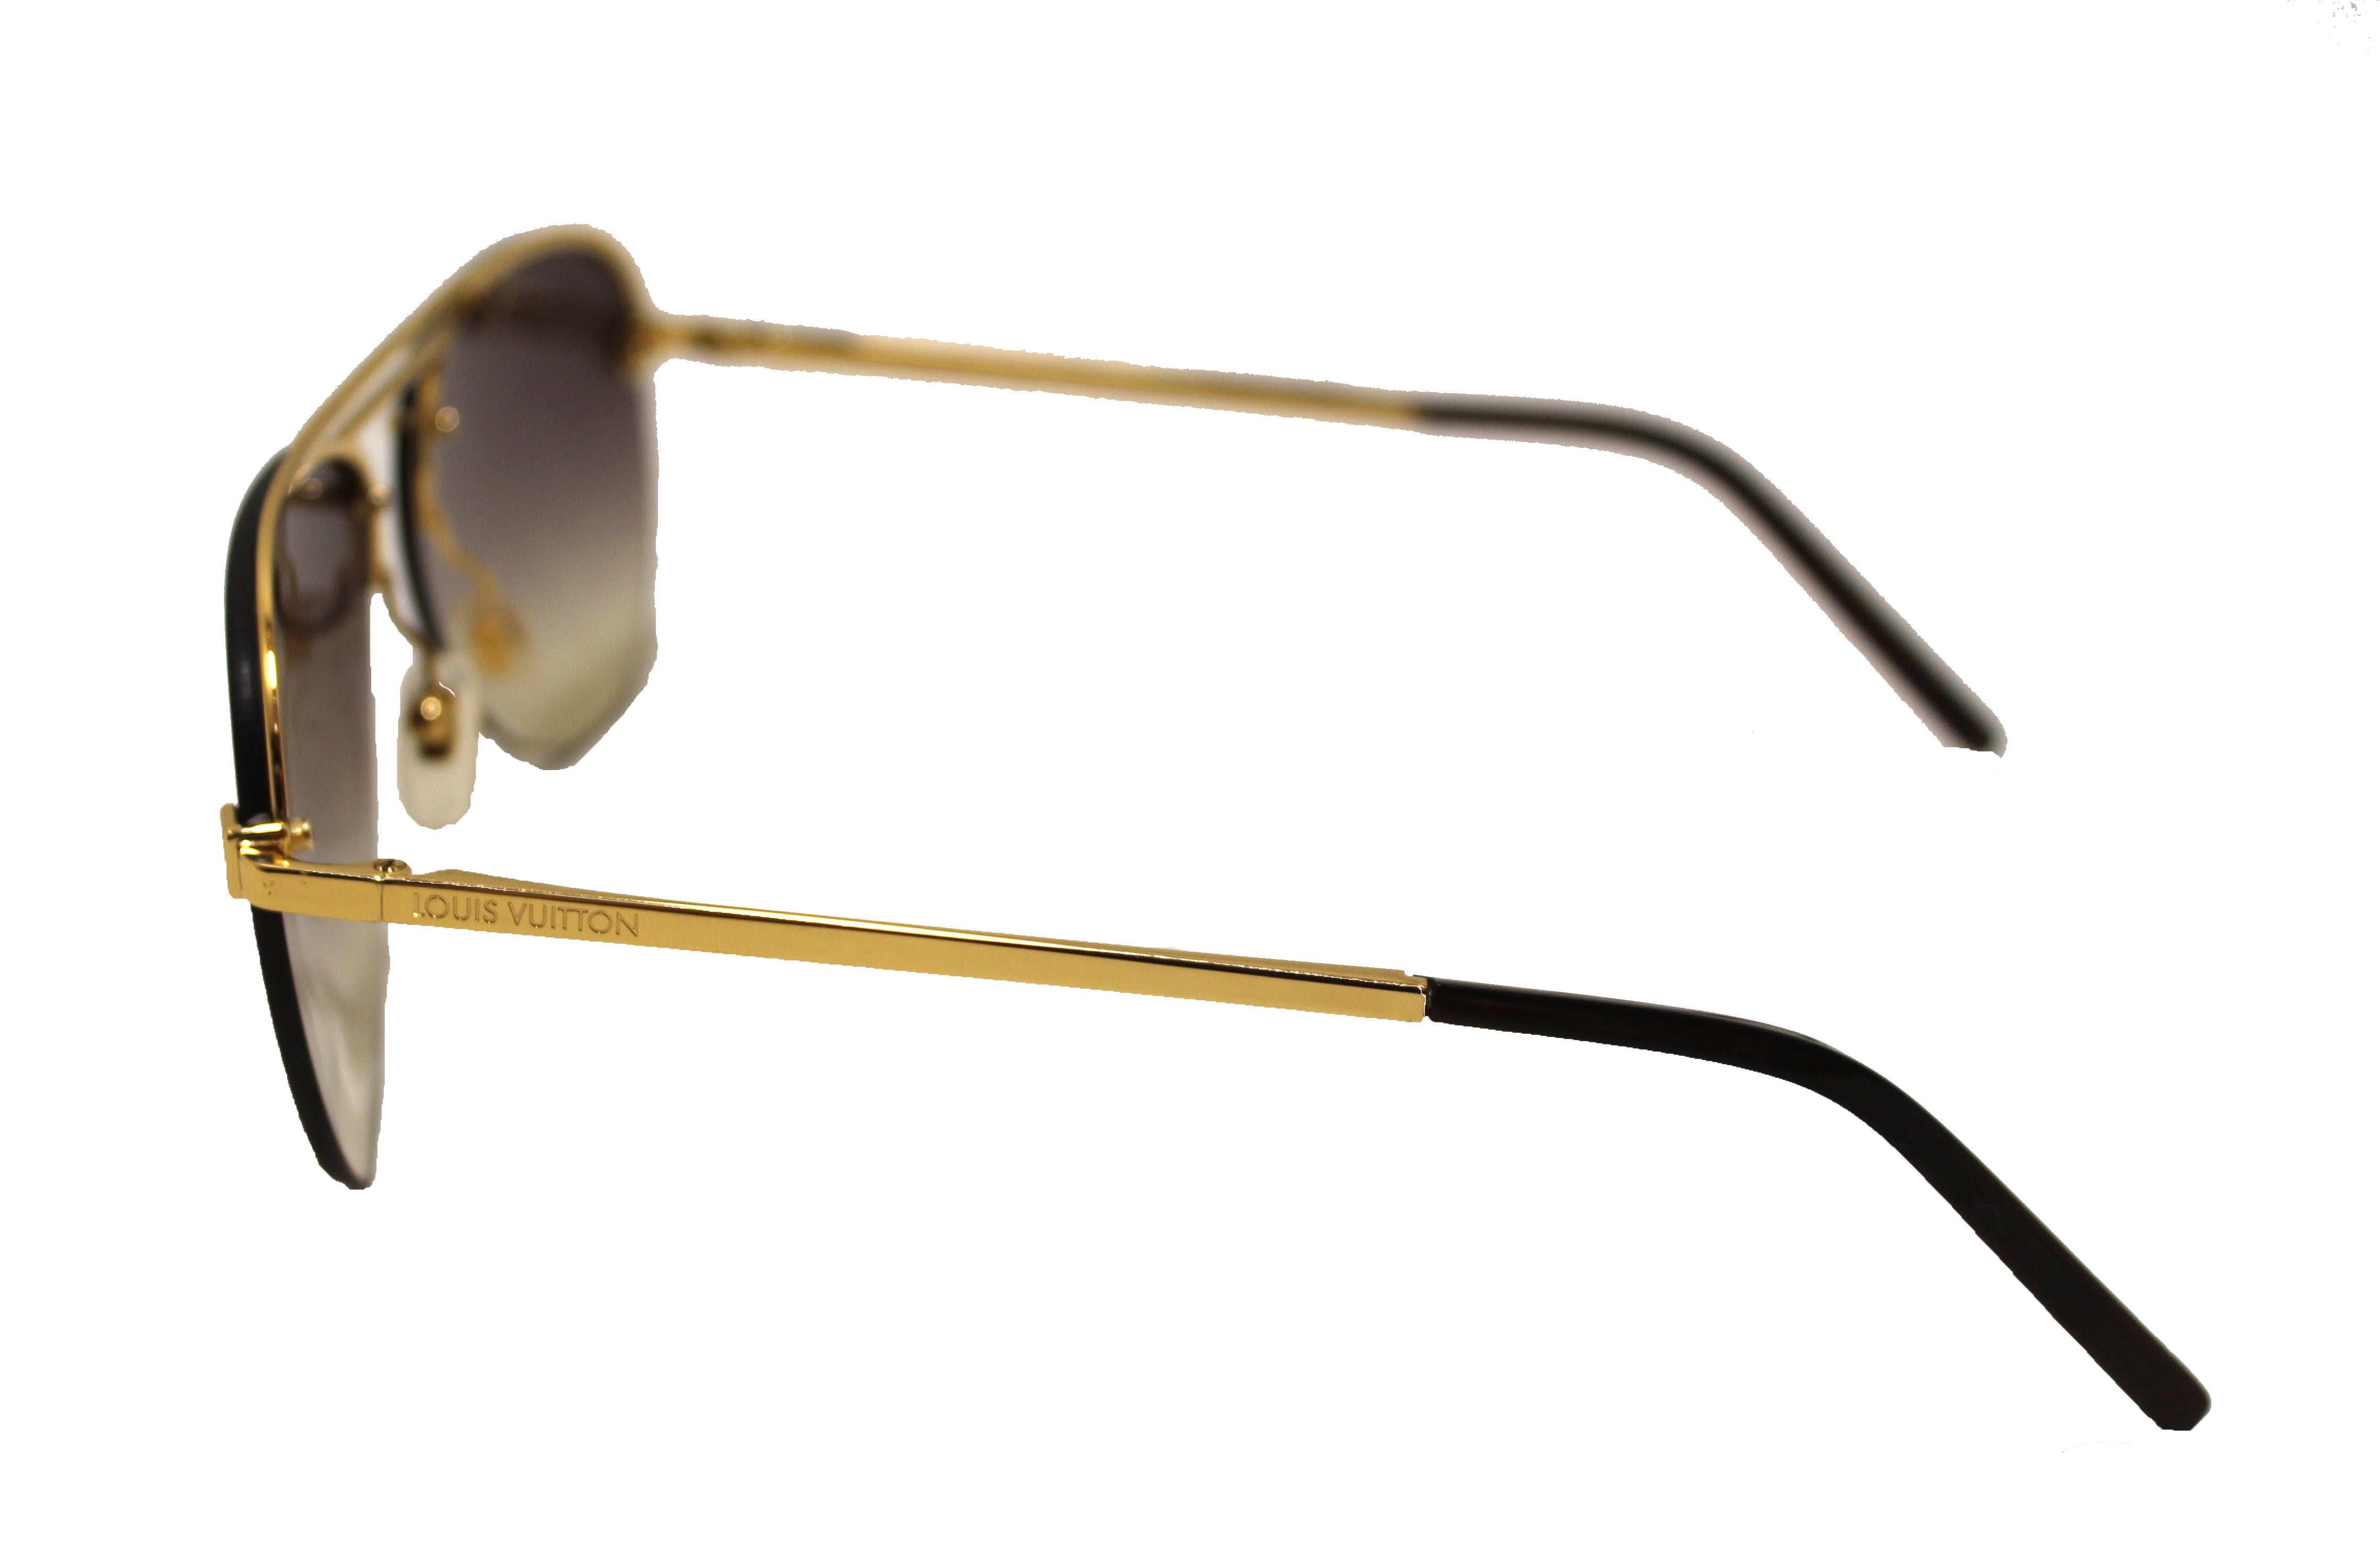 Authentic Louis Vuitton Gold Monogram Clockwise Sunglasses